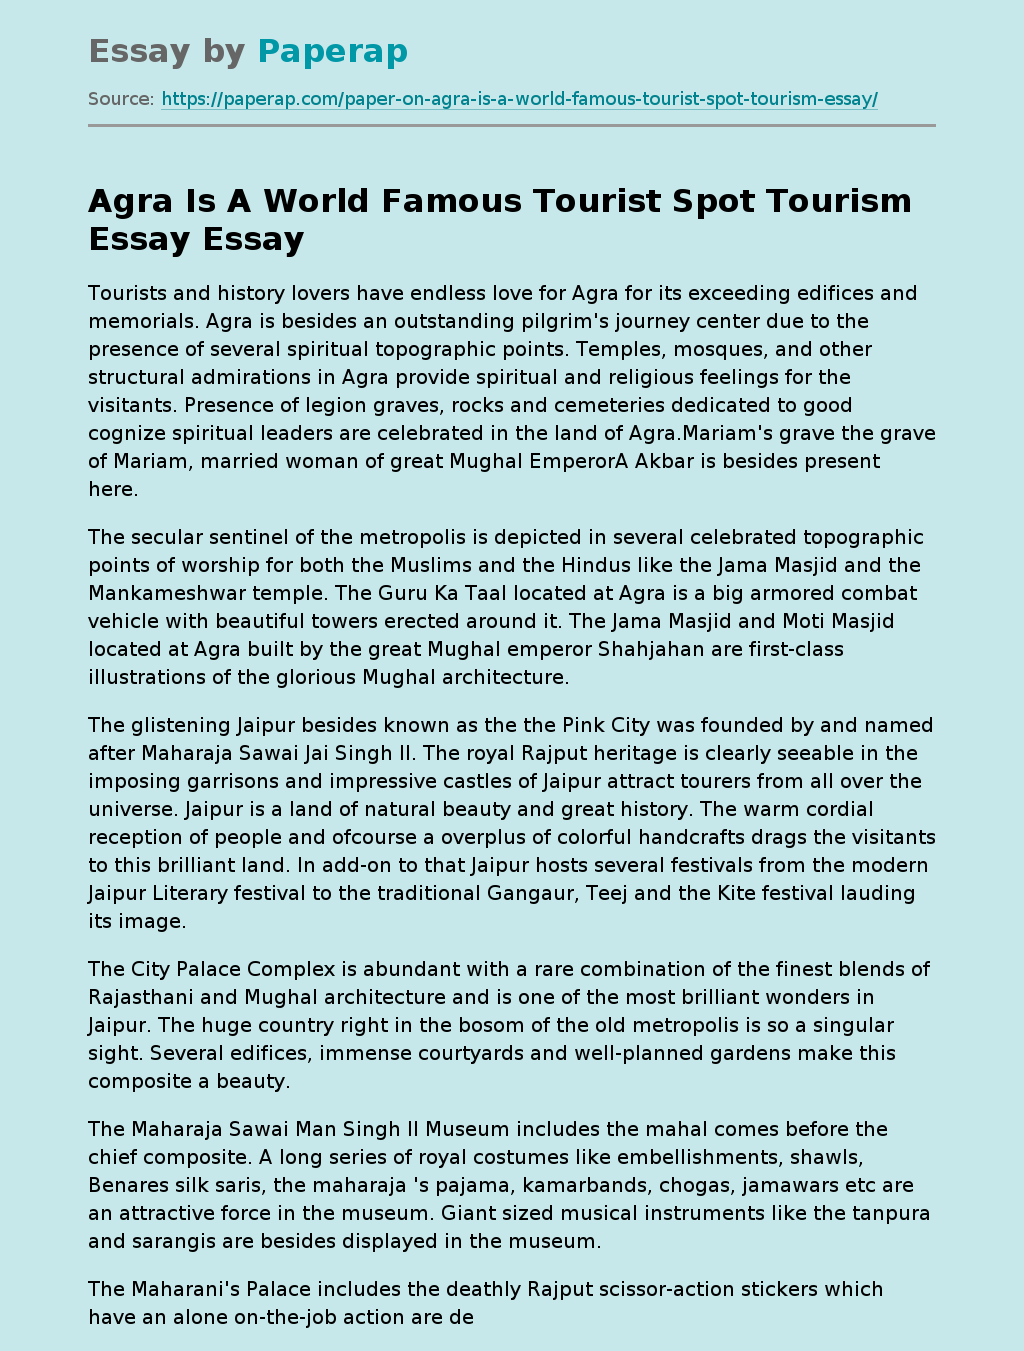 Agra Is A World Famous Tourist Spot Tourism Essay